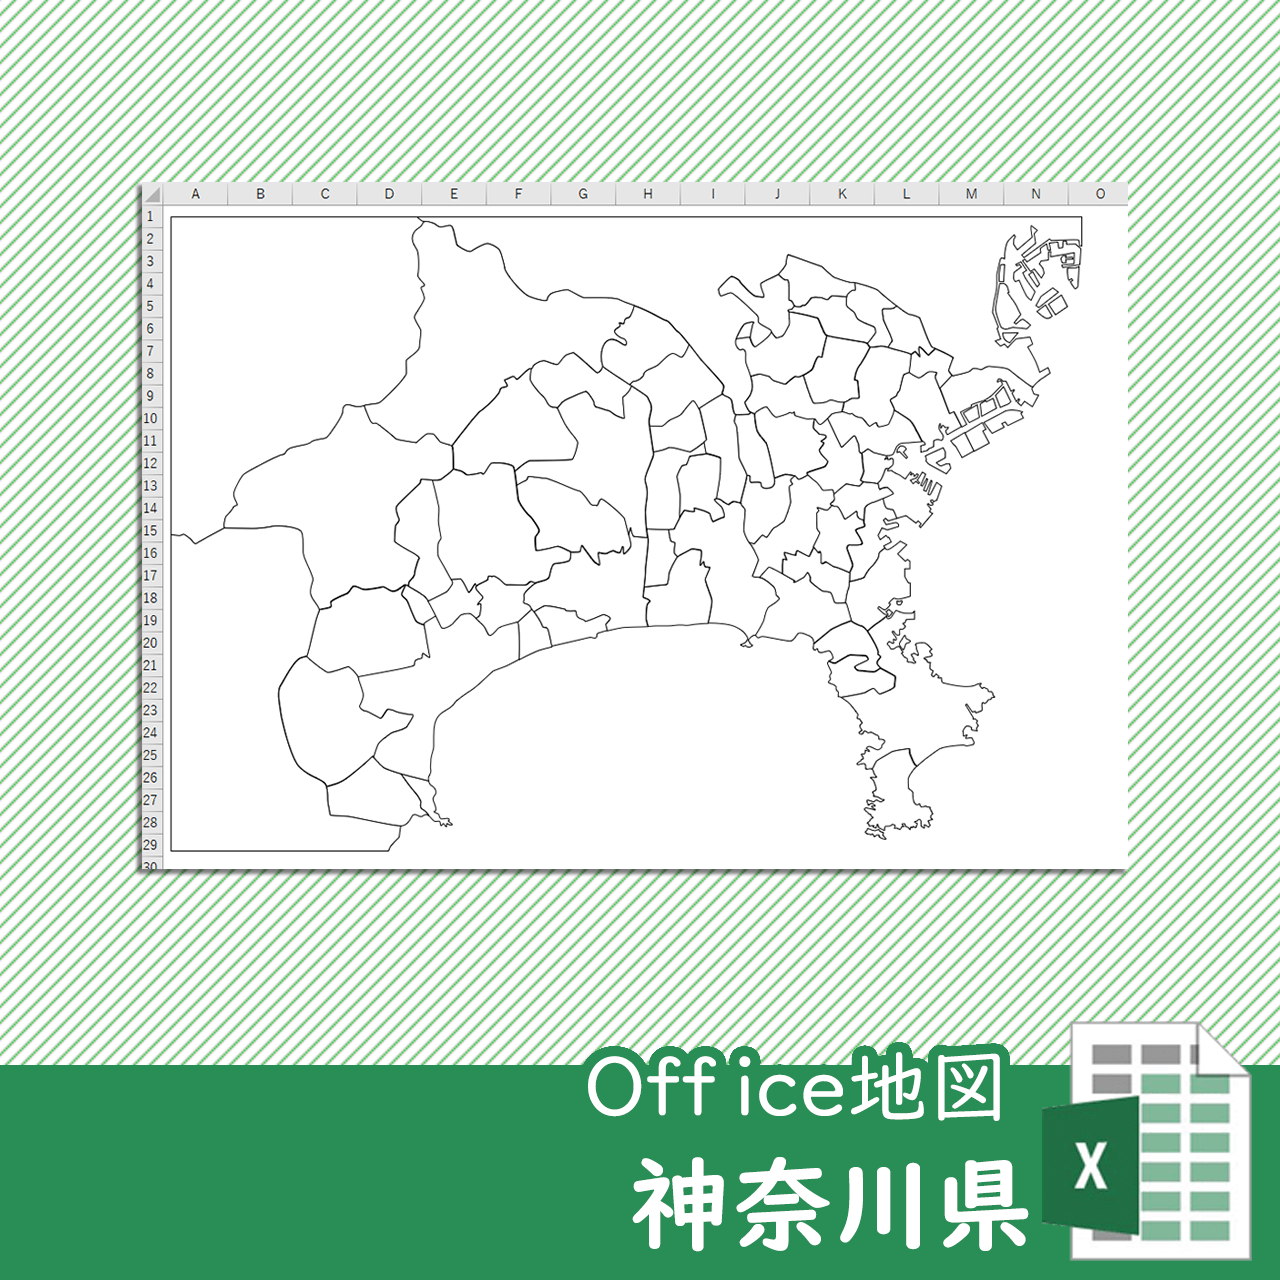 神奈川県のOffice地図のサムネイル